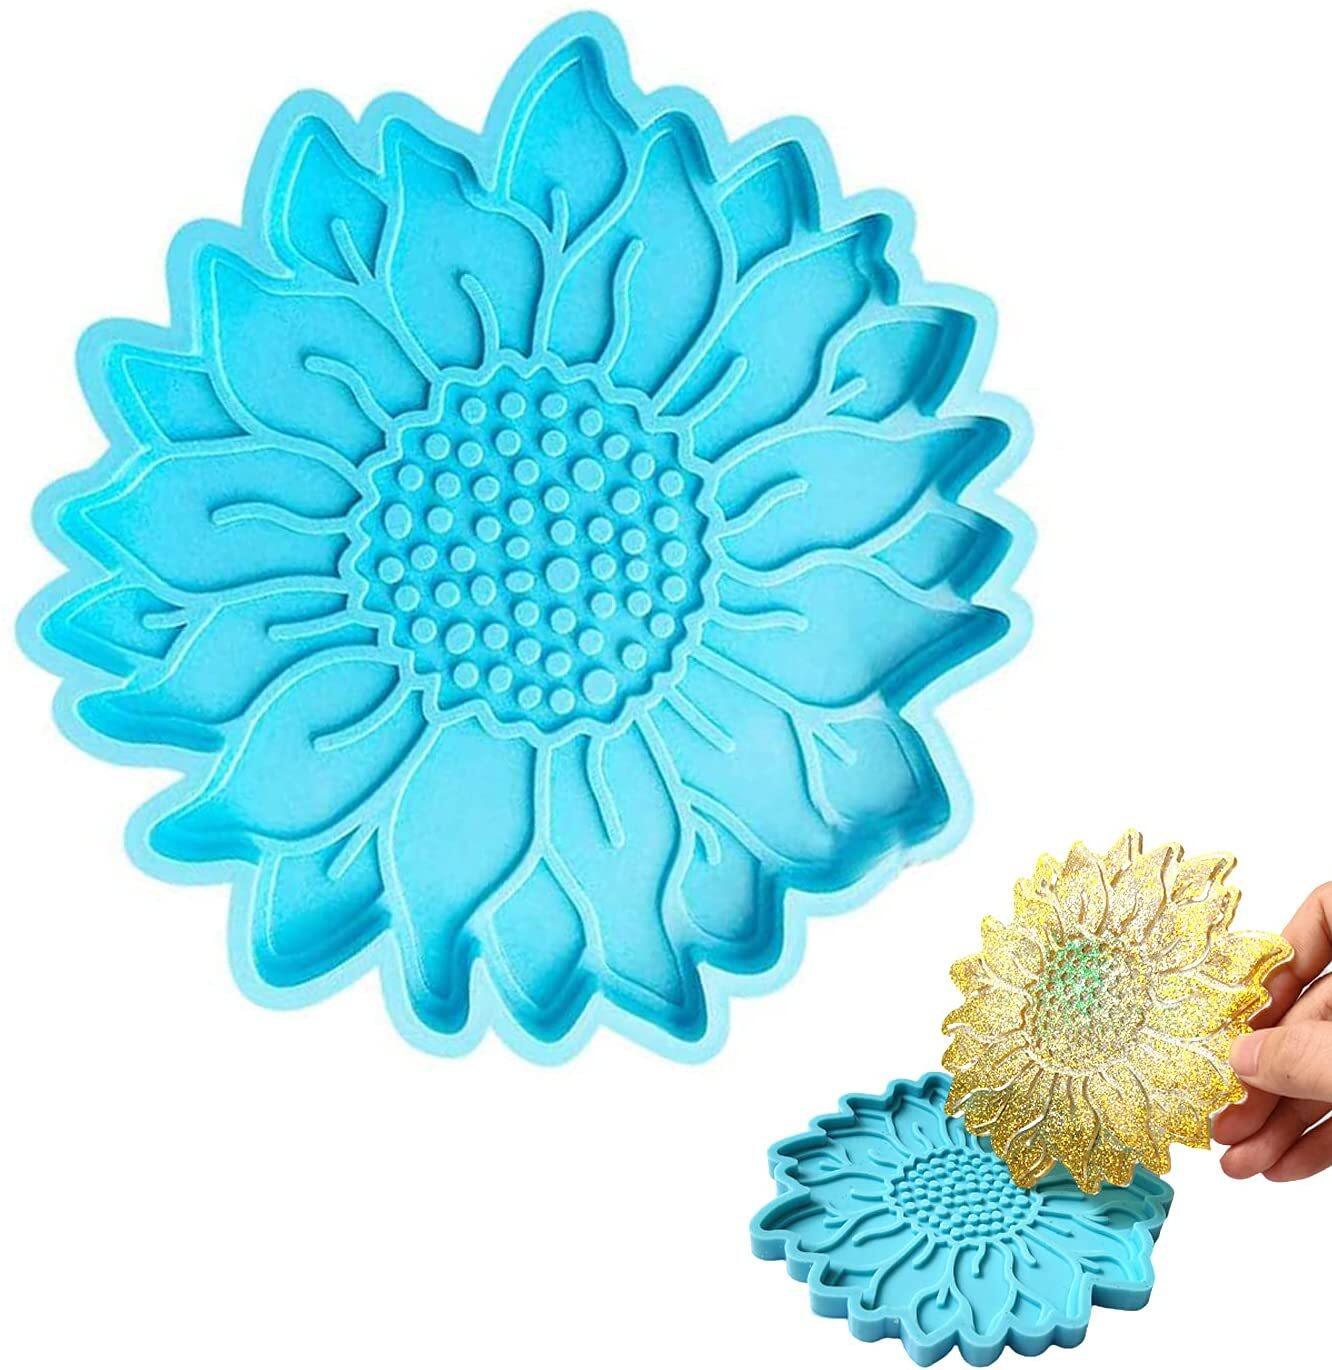 YJFUY Sun ดอกไม้ประดิษฐ์ของตกแต่งบ้านแผ่น DIY แม่พิมพ์ Coaster เครื่องมือเเม่พิมพ์สำหรับทำอาหารแม่พิมพ์เทียนไข